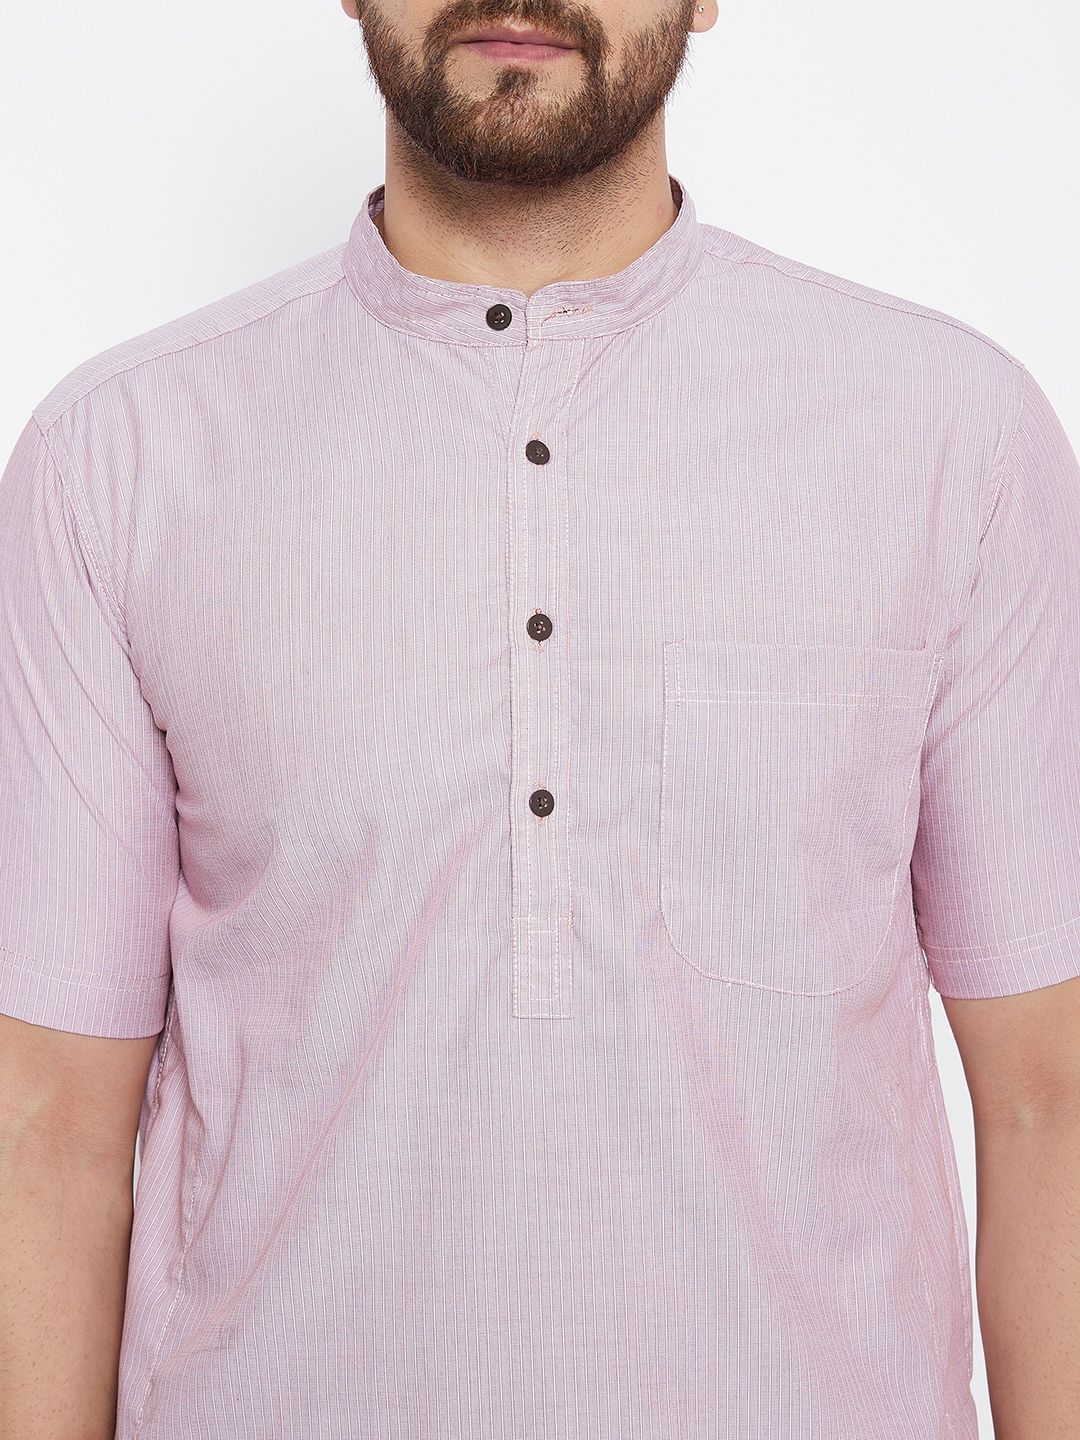 Men's Striped Pink Straight Kurta - Even Apparels